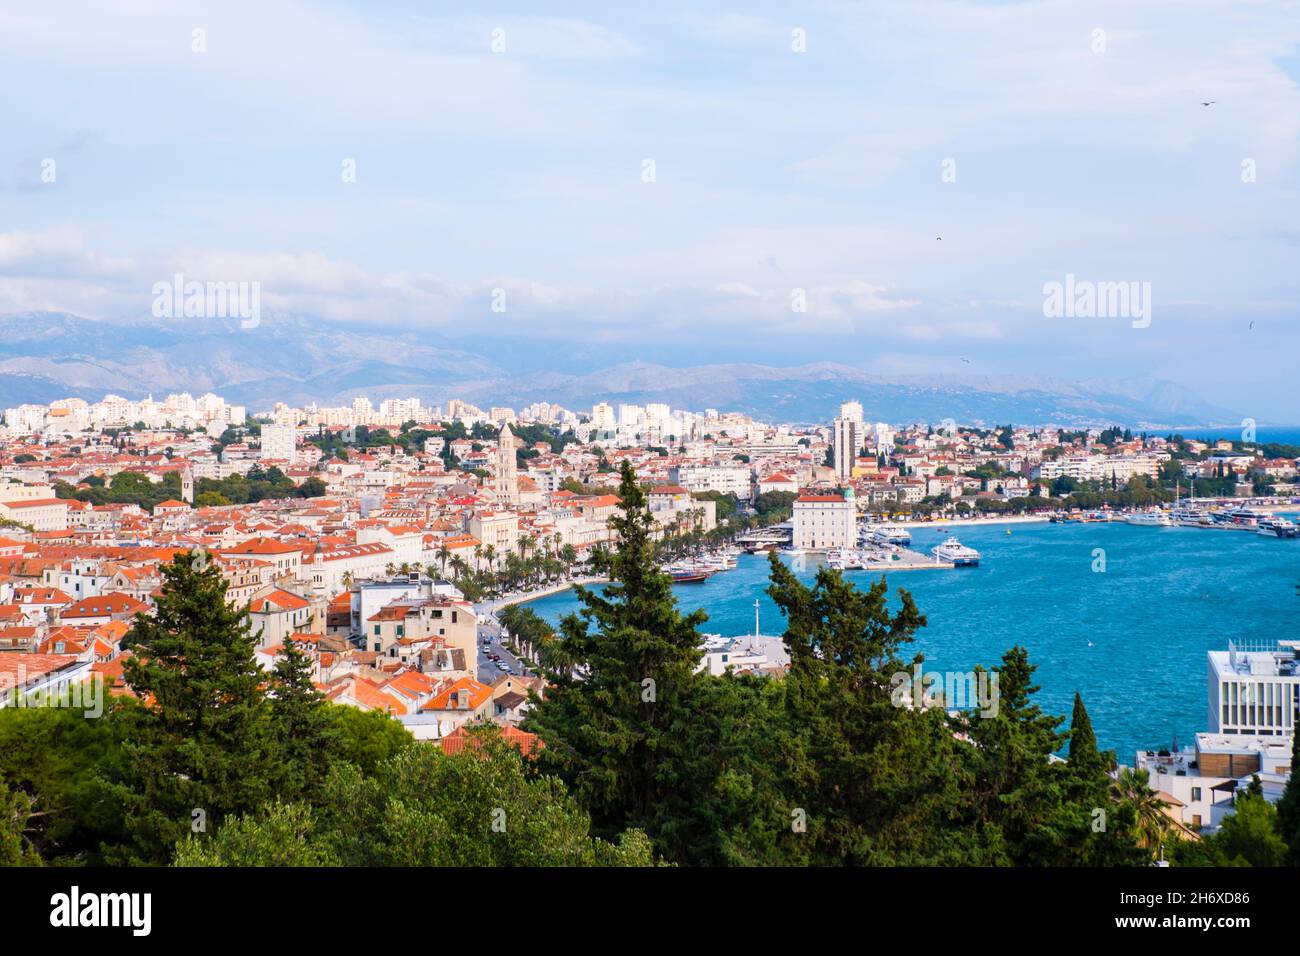 Split, Croatia, seen from Marjan Hill Stock Photo